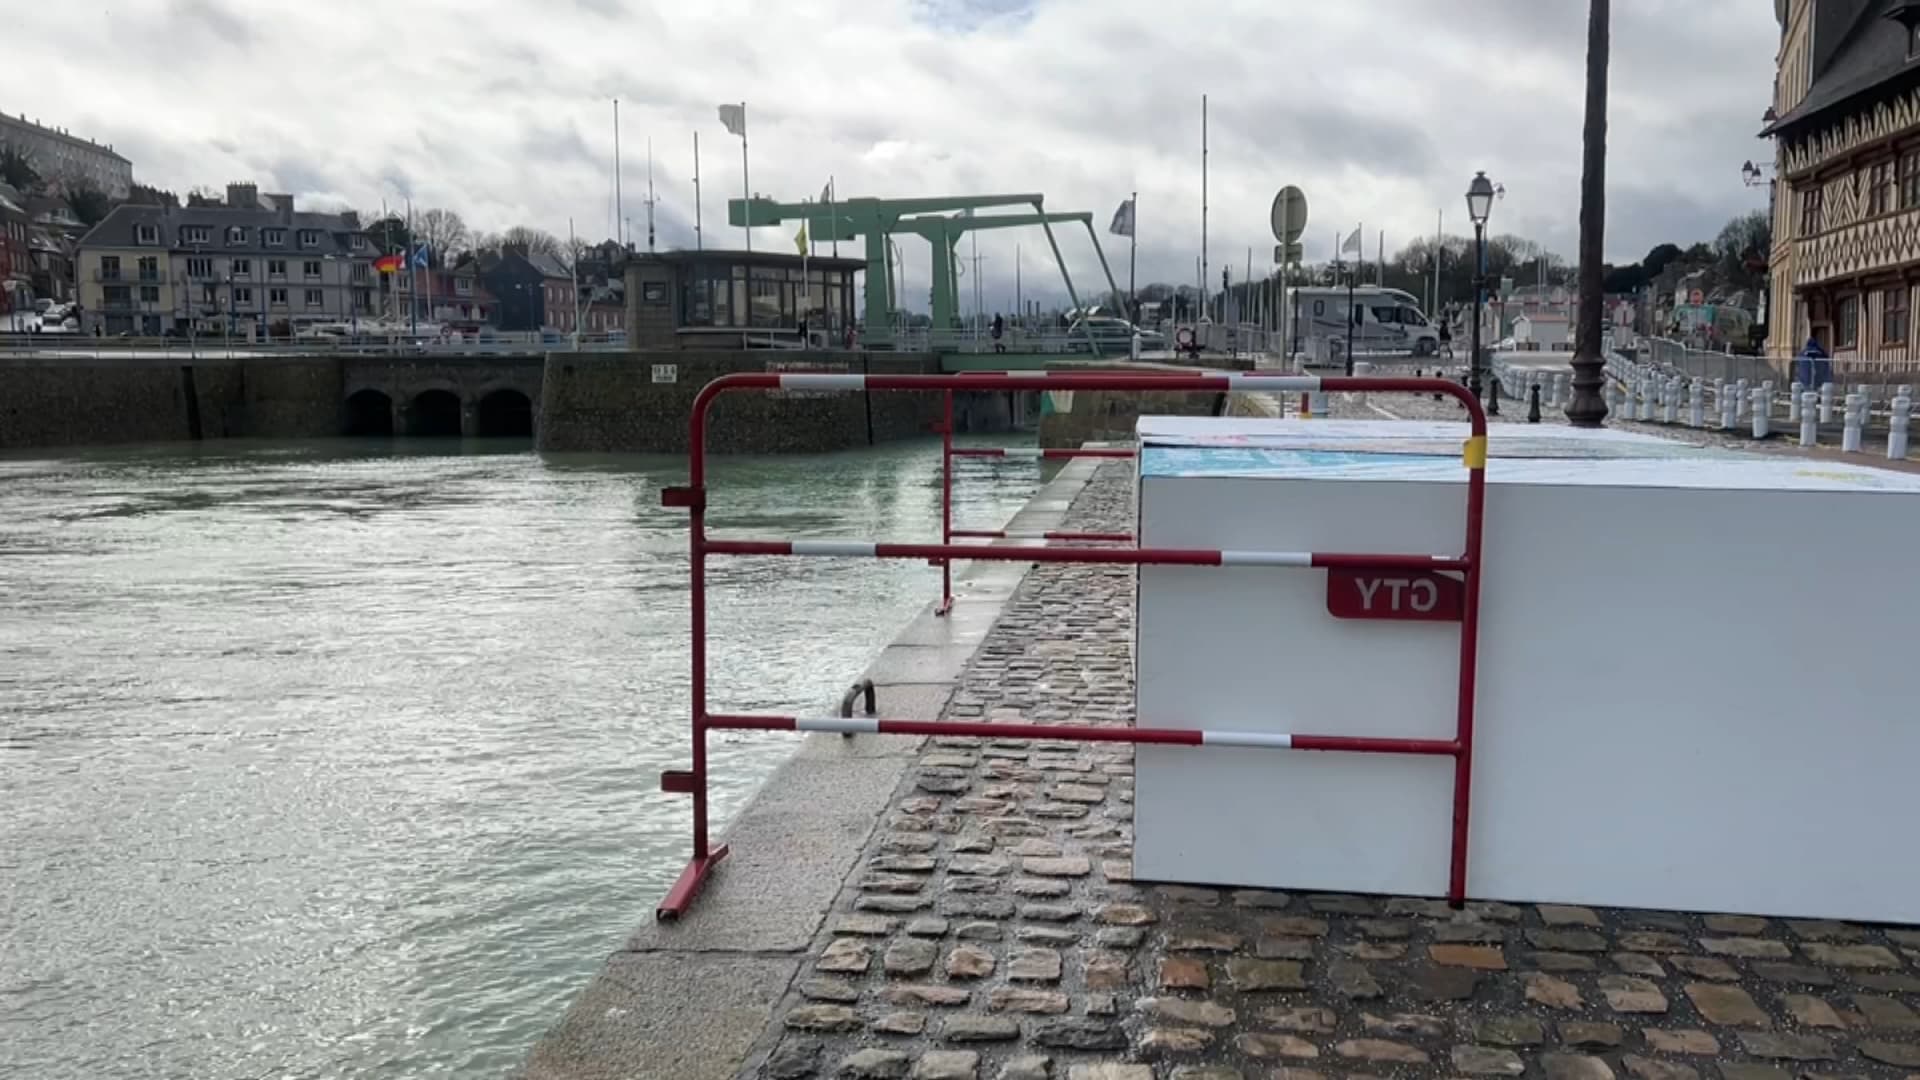 seine-maritime: un dispositif pour protéger des inondations testé dans le port de saint-valery-en-caux